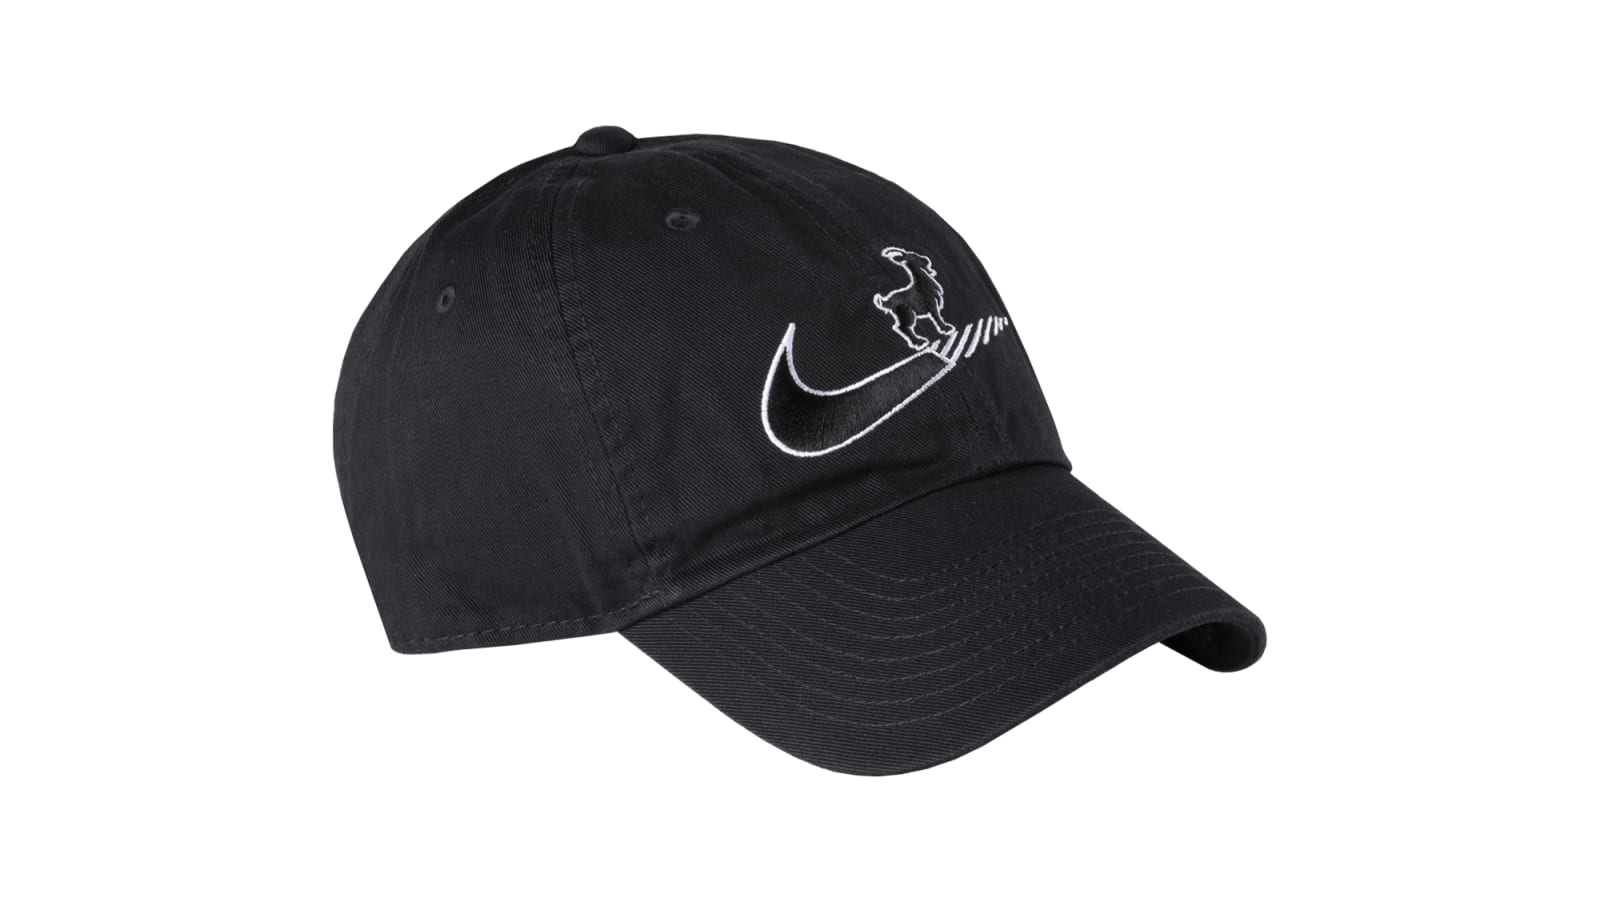 Nike Campus Cap - Goat - Black